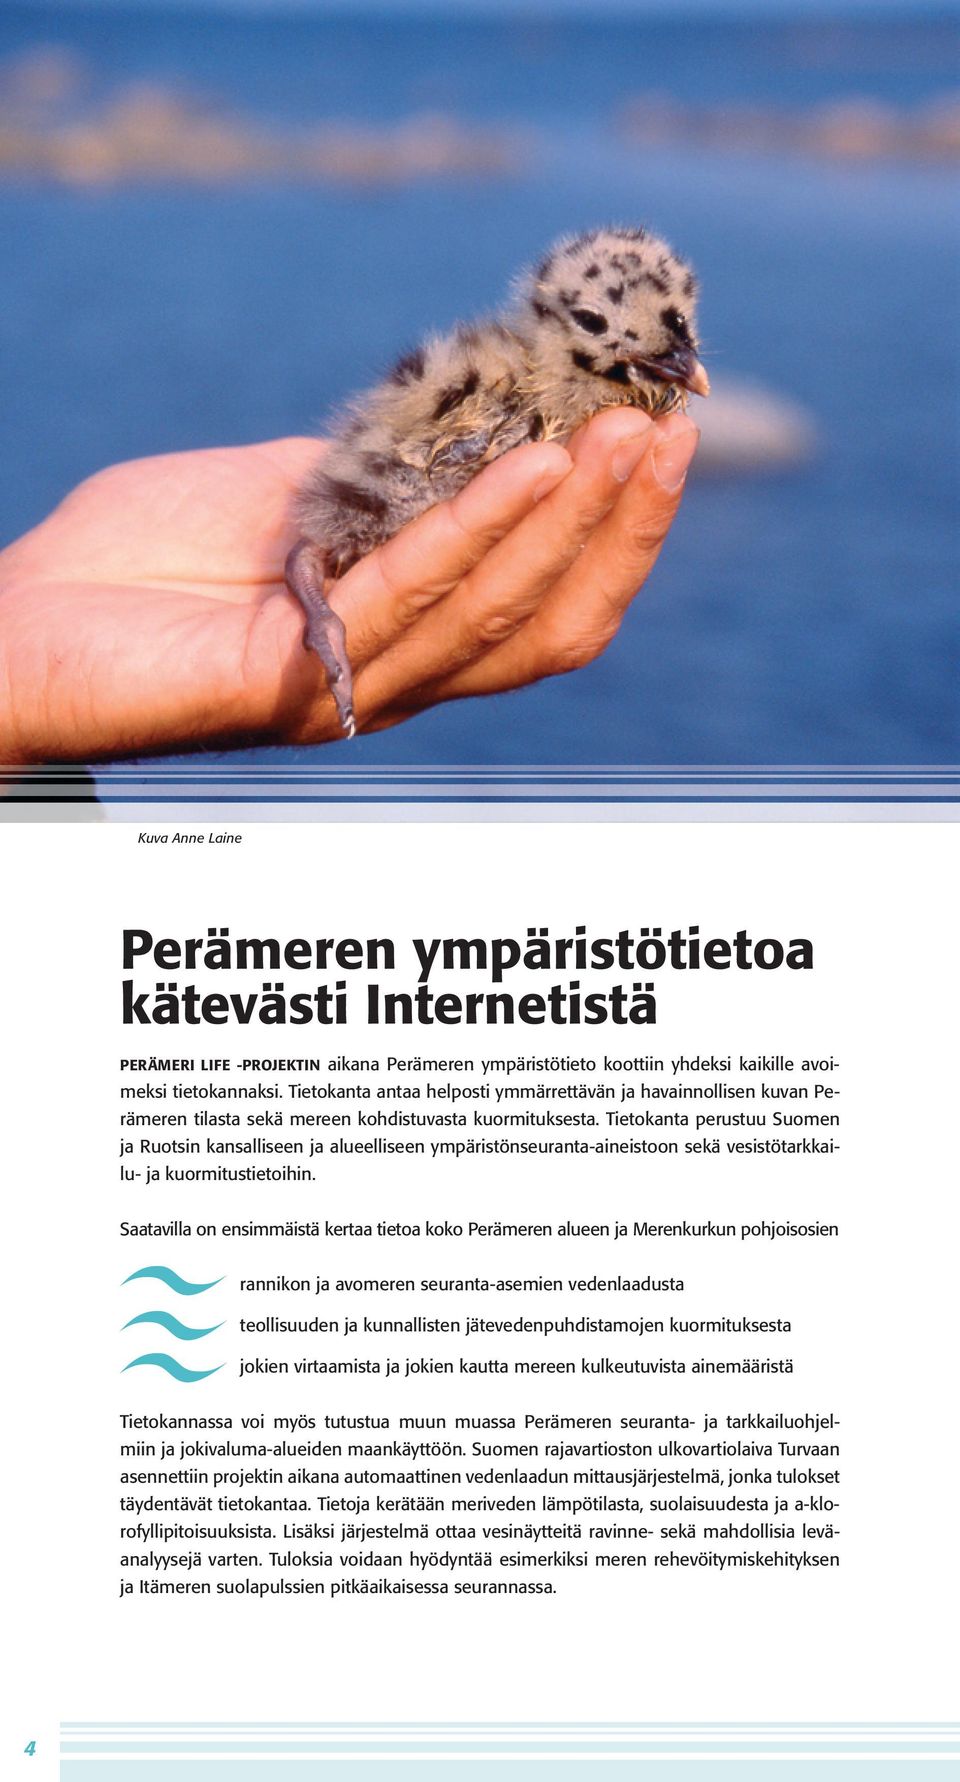 Tietokanta perustuu Suomen ja Ruotsin kansalliseen ja alueelliseen ympäristönseuranta-aineistoon sekä vesistötarkkailu- ja kuormitustietoihin.